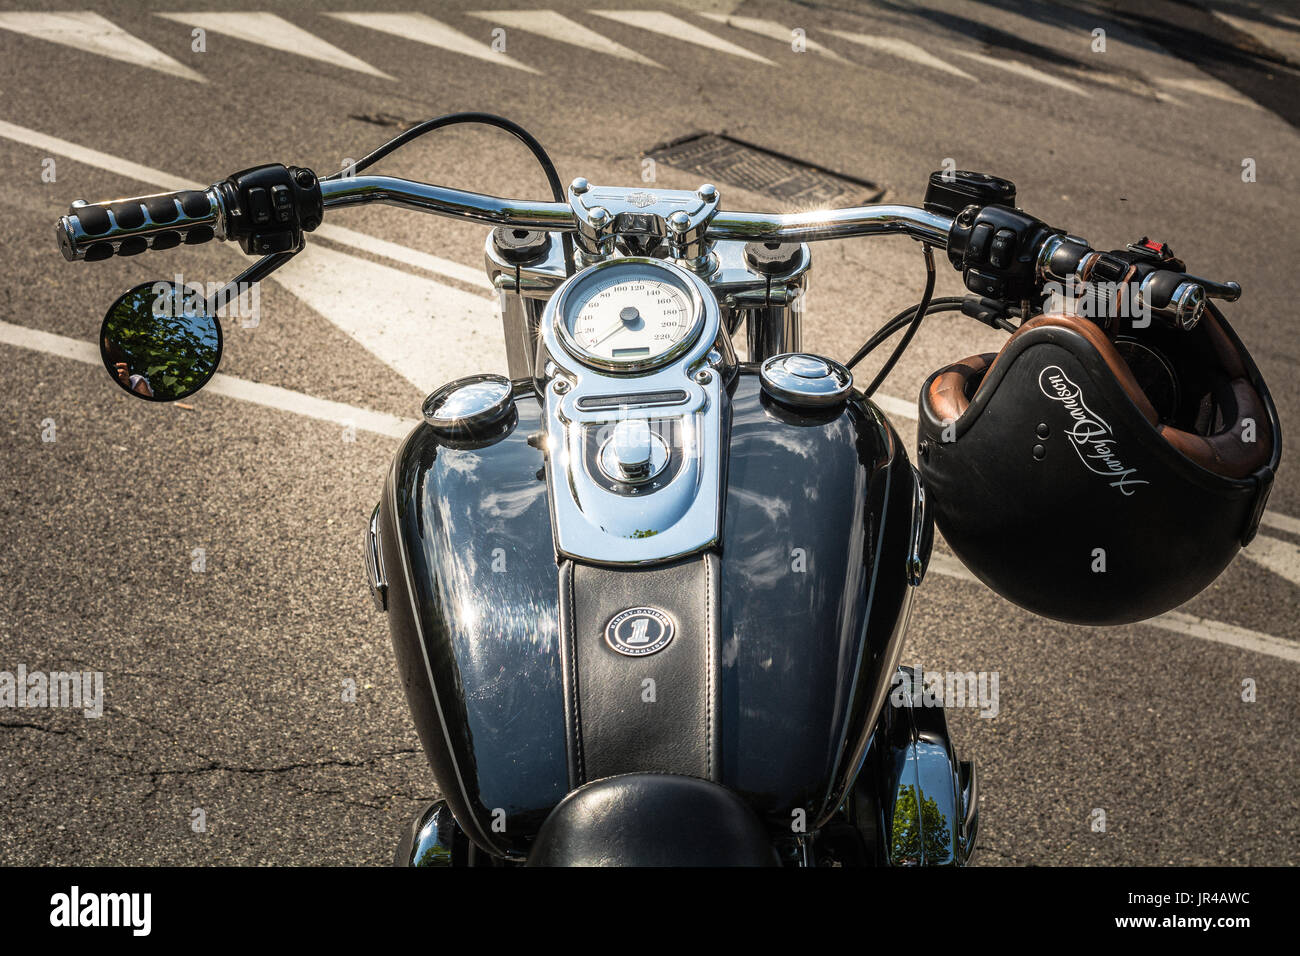 Trento, 22 Luglio 2017: emblema e i dettagli della famosa Harley Davidson Moto. Vintage e stile retrò fotografia con filtri Foto Stock